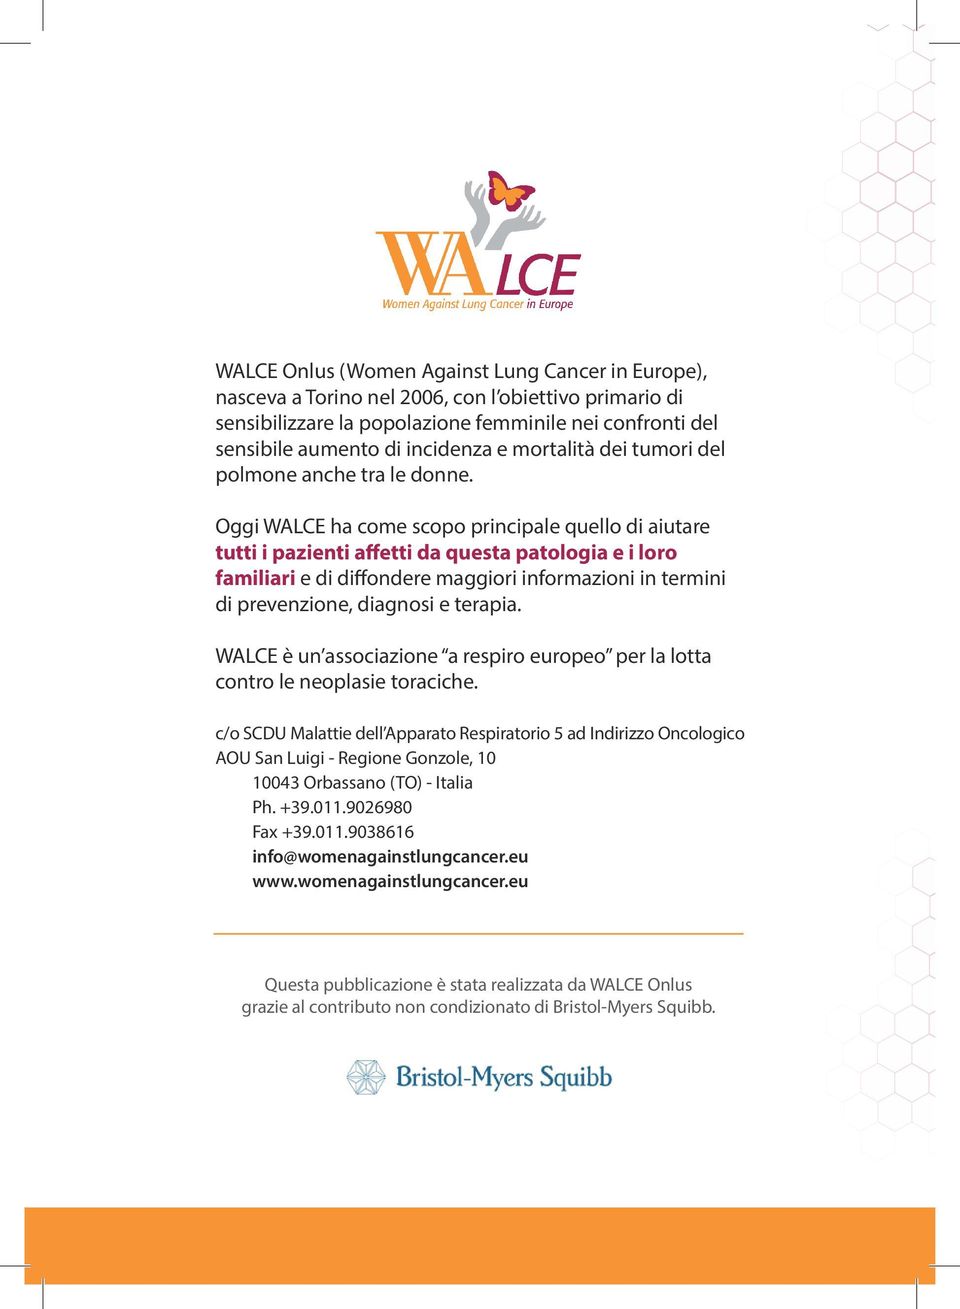 Oggi WALCE ha come scopo principale quello di aiutare tutti i pazienti affetti da questa patologia e i loro familiari e di diffondere maggiori informazioni in termini di prevenzione, diagnosi e